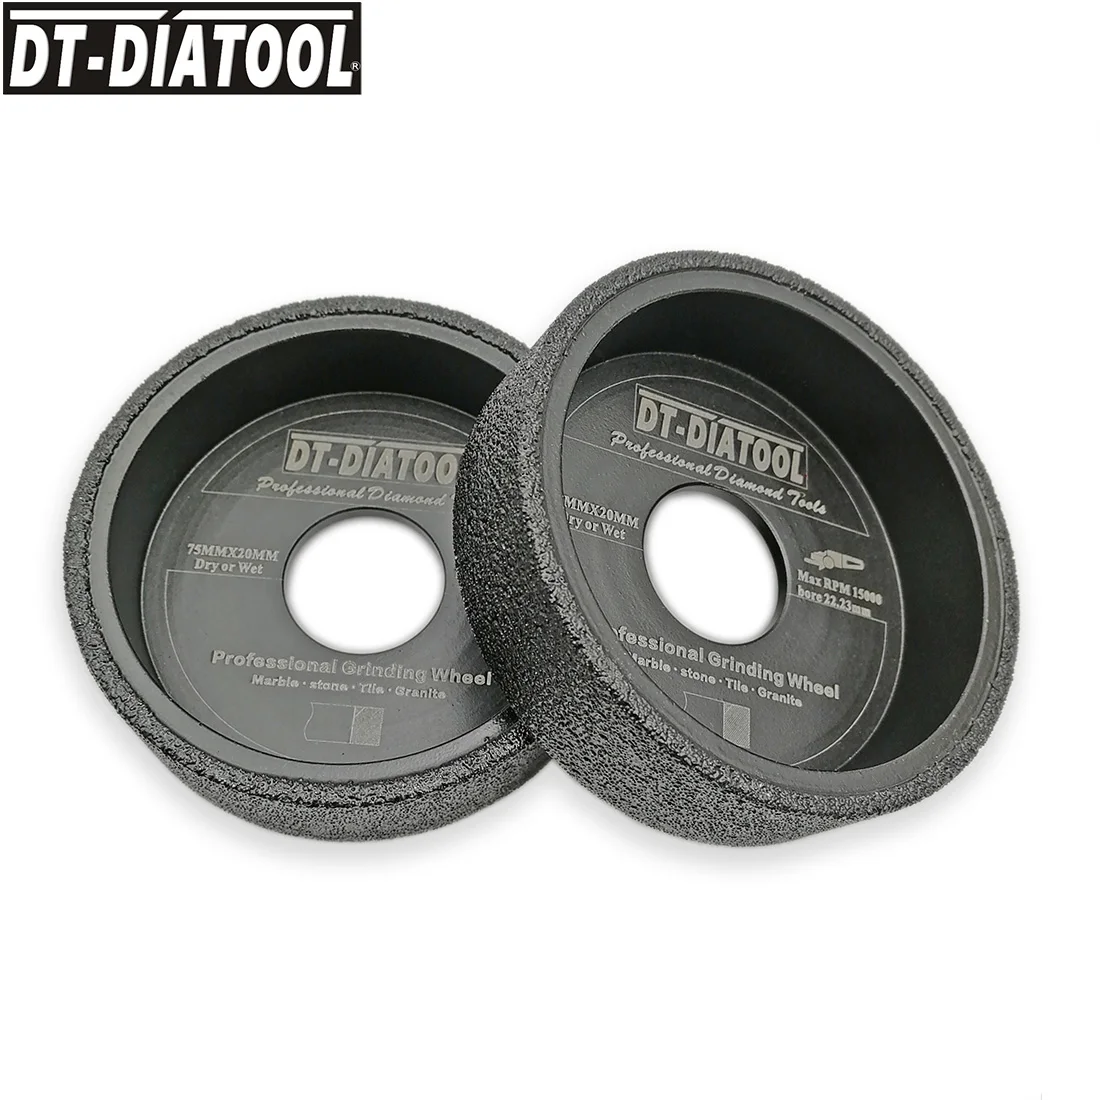 DT-DIATOOL 2 шт./pk диаметр 75mmx20 вакуумной пайки Алмазный шлифовальный плоское колесо Arbor 22,23 мм шлифовальный диск для мрамора гранит керамика